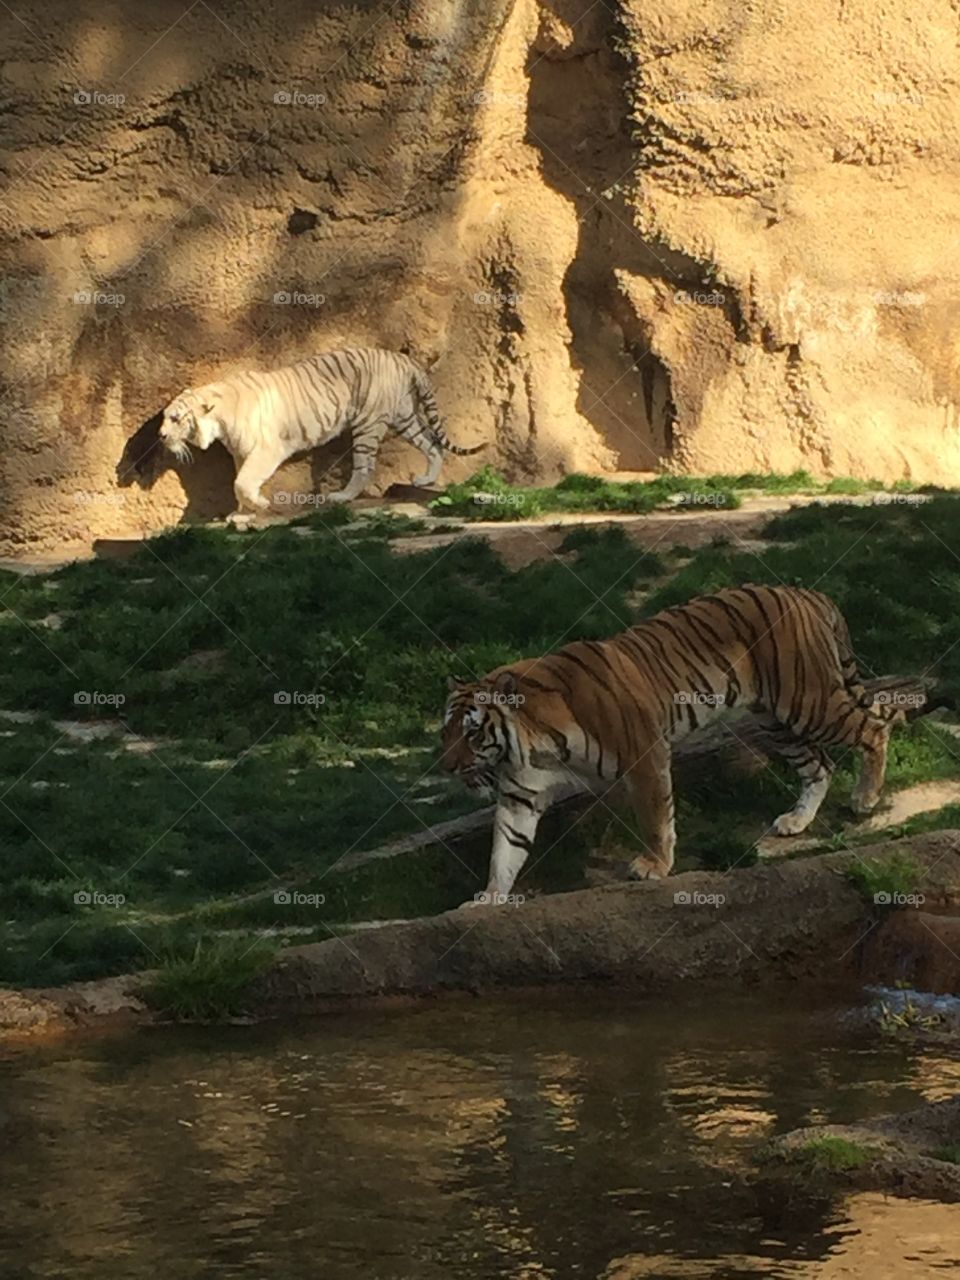 Tigers at Memphis Zoo 